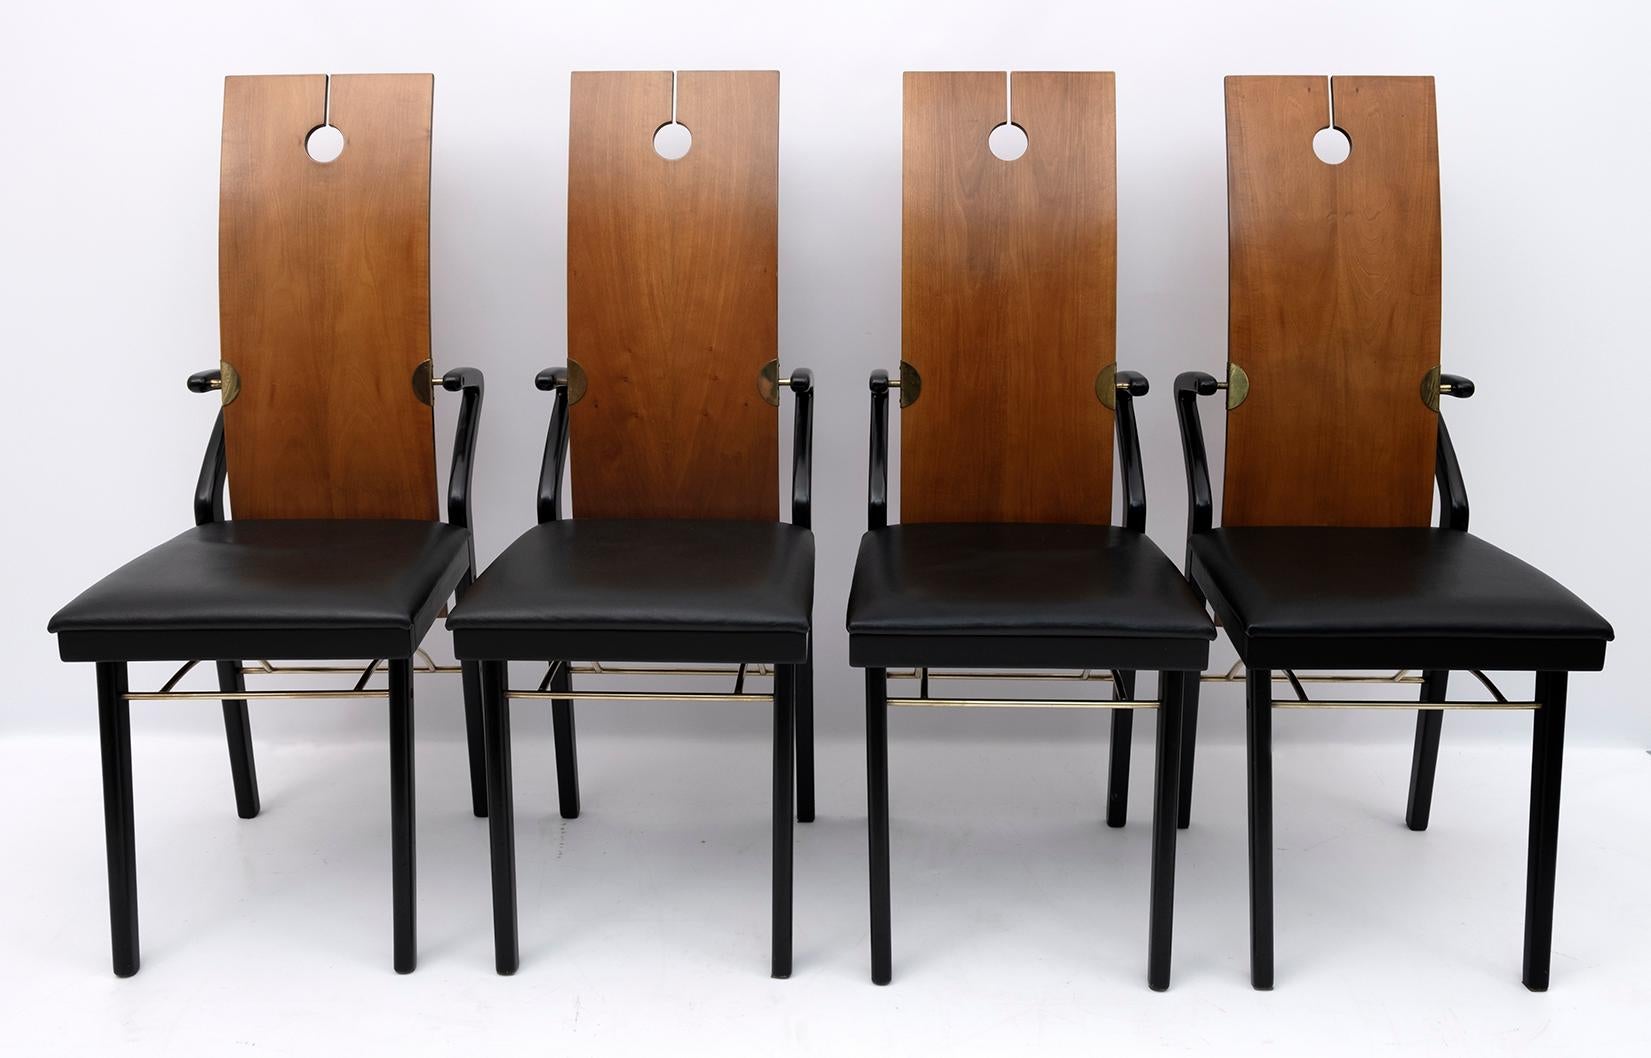 Quatre chaises de salle à manger de Pierre Cardin, années 1980. Production absolument rare conçue par Pierre Cardin en Italie. Dossier en cerisier courbé avec une découpe et un trou qui le rendent absolument unique, assise et pieds toujours en